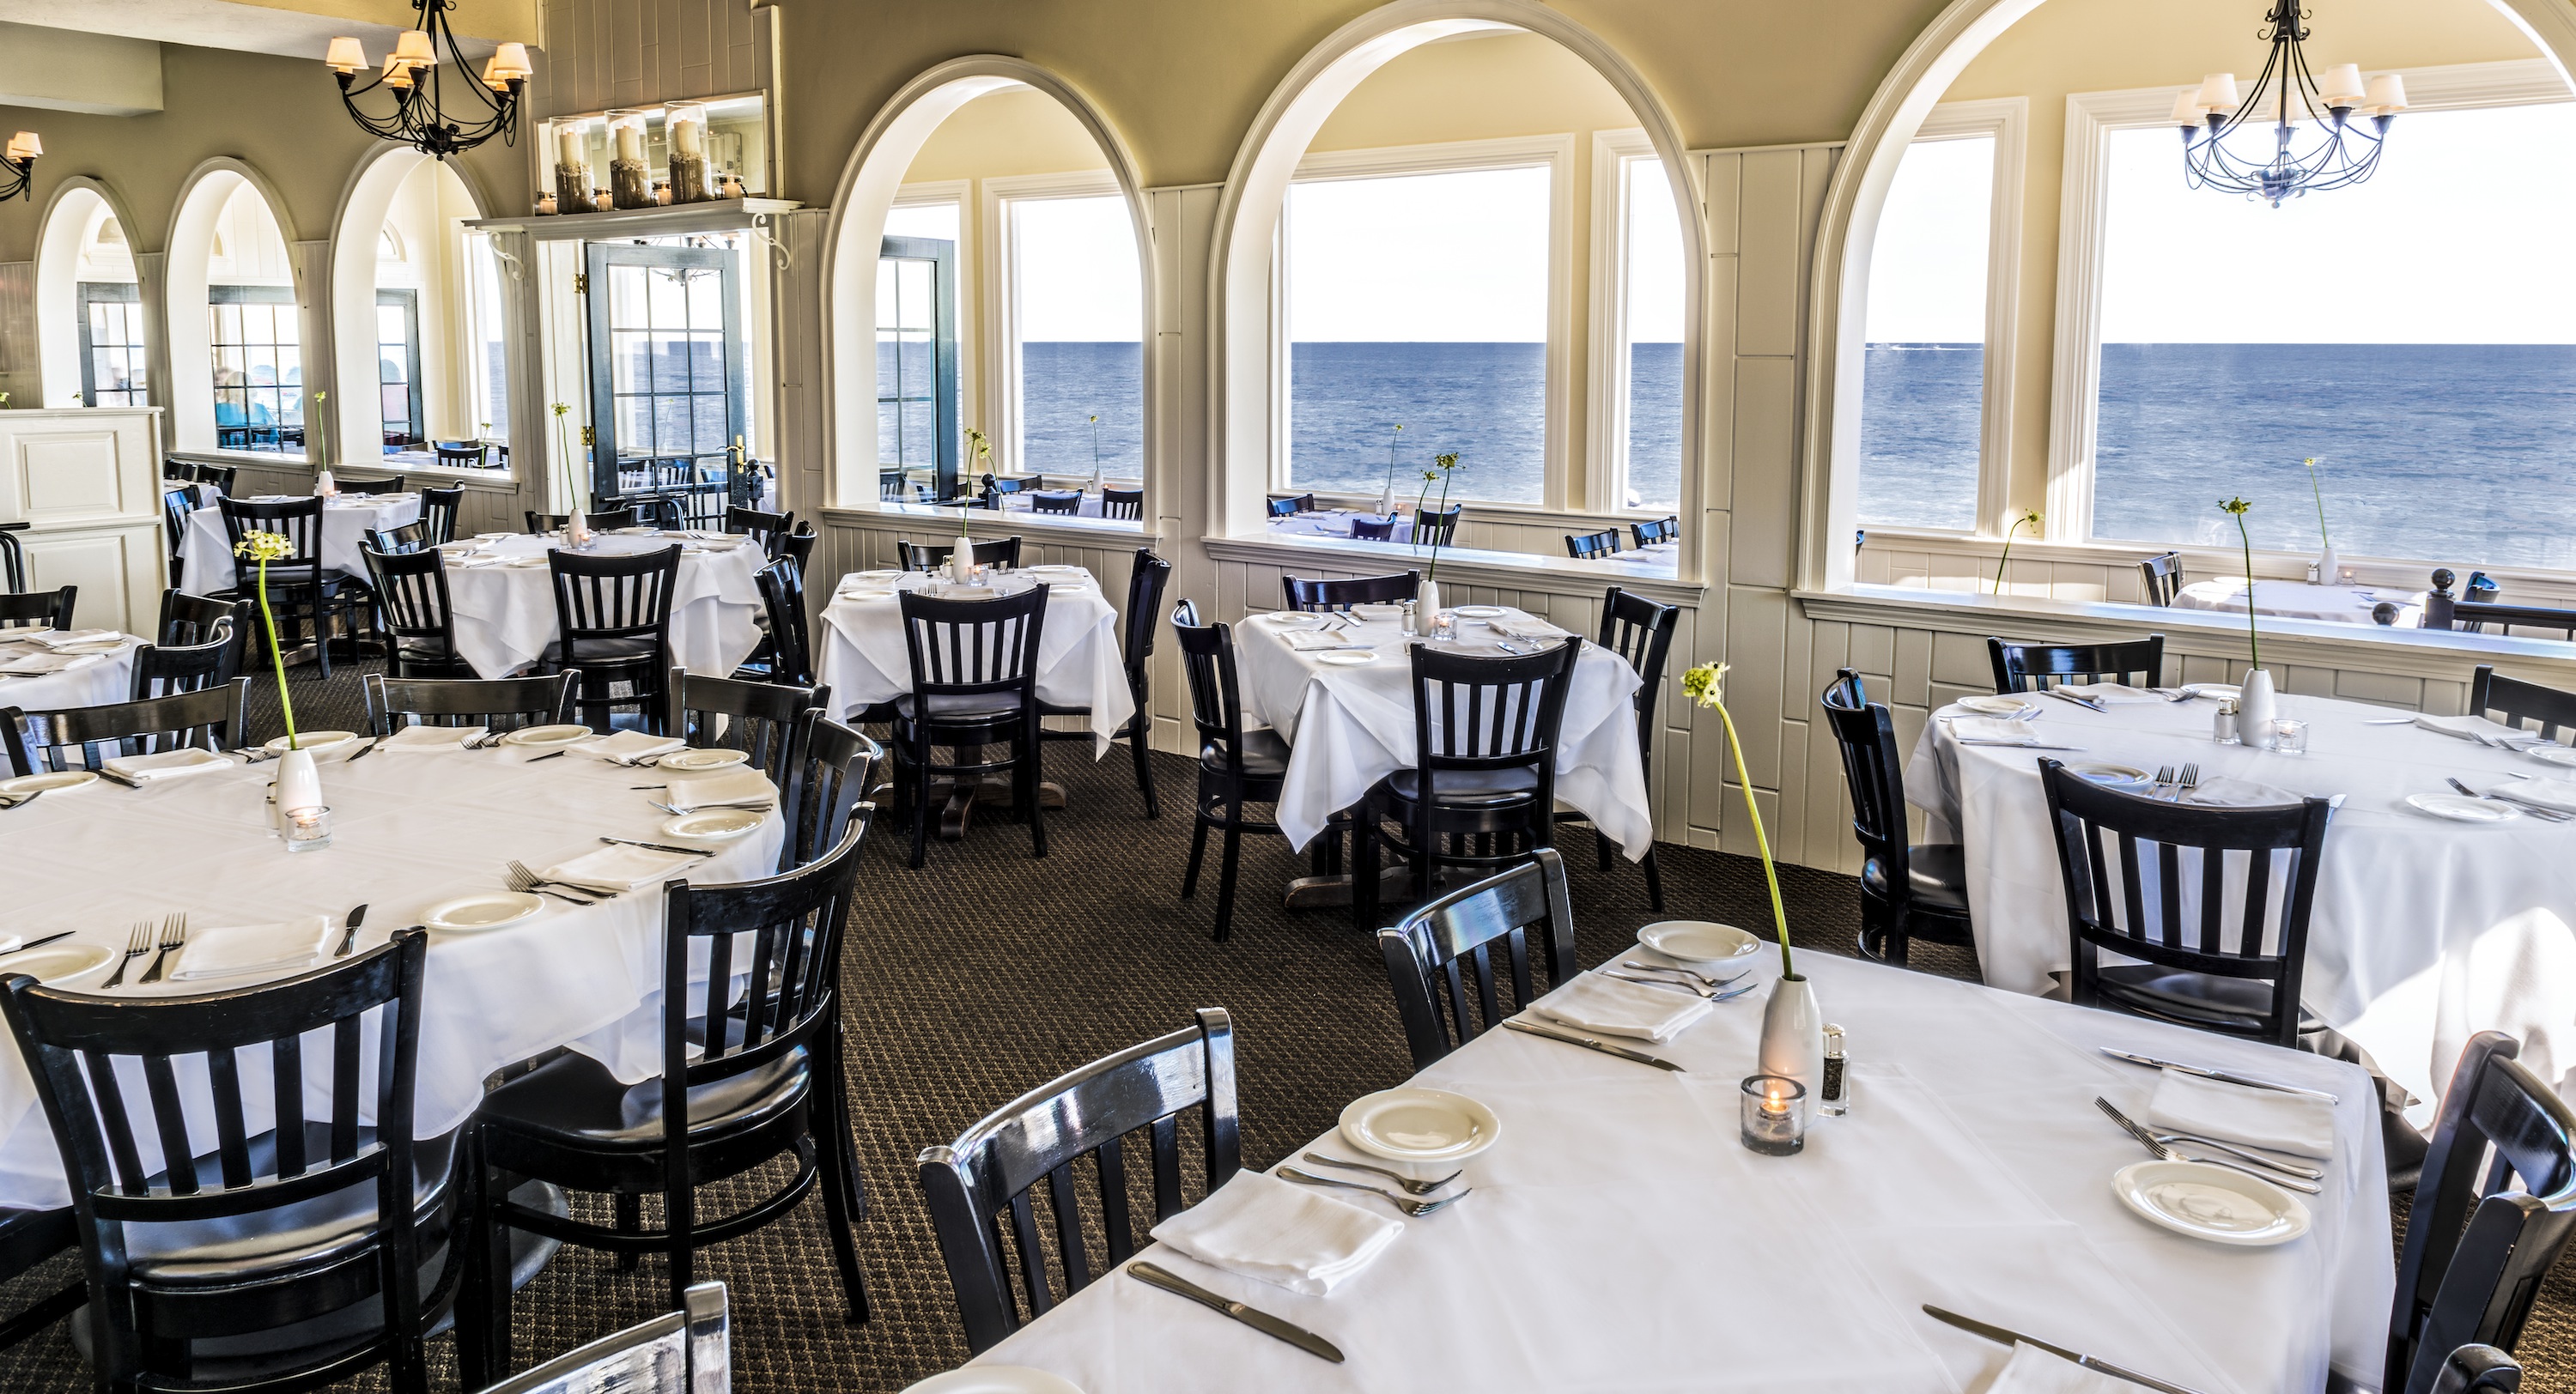 The Ocean House Restaurant – Breezy, Beach